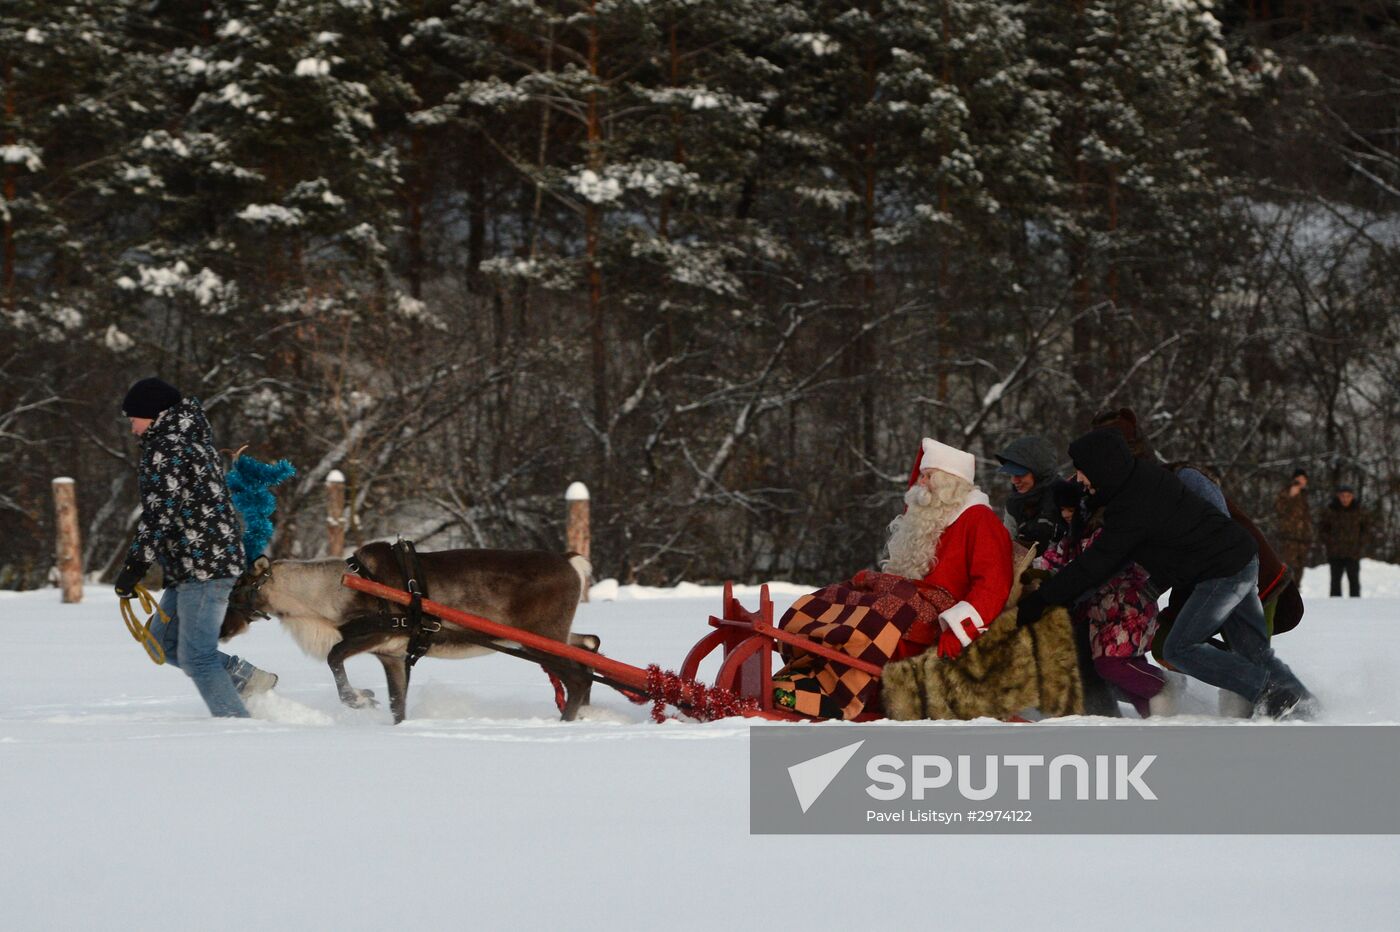 Finnish Christmas figure Joulupukki visits Yekaterinburg